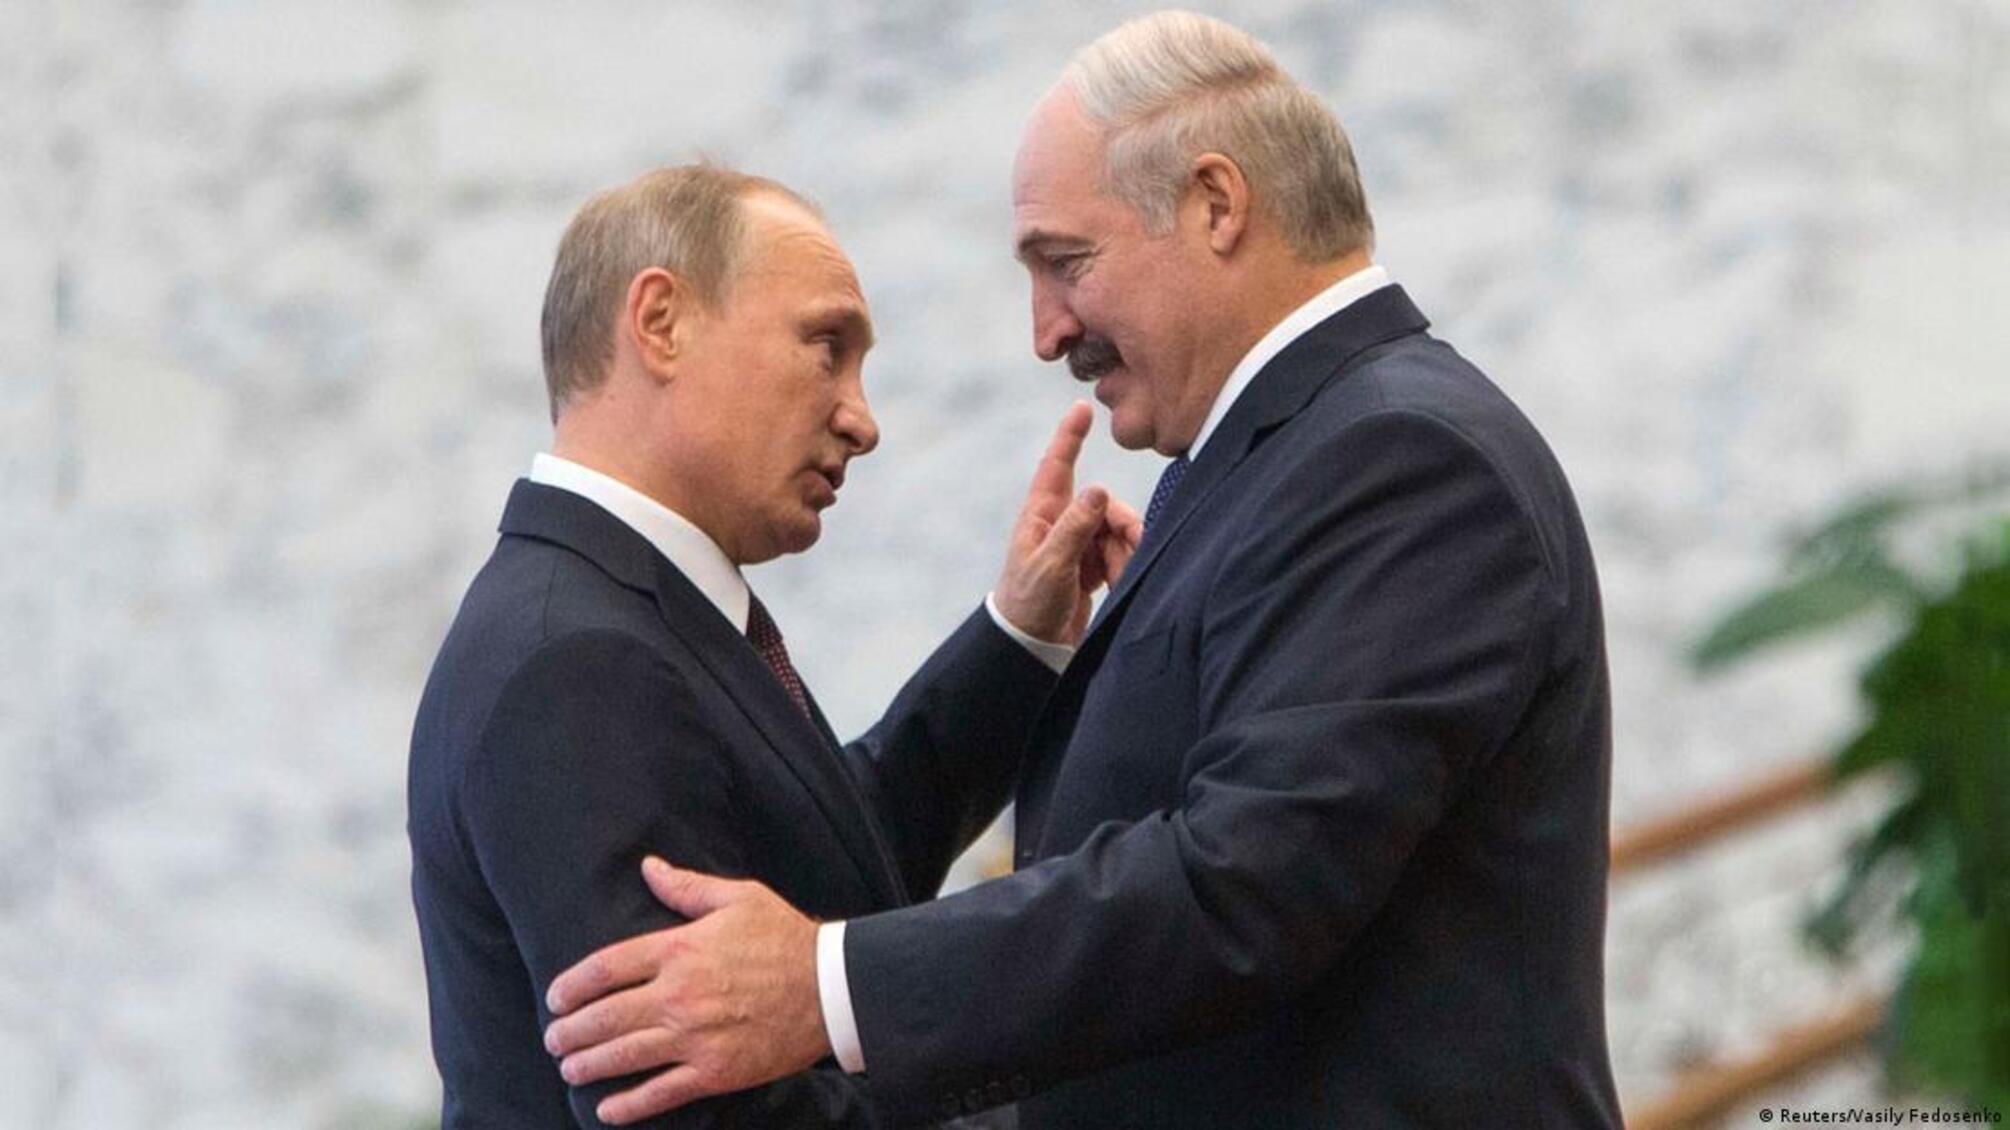 Лукашенко обманул путина? Белорусский диктатор, вероятно, подделывал ПЦР-тесты перед поездками в рф